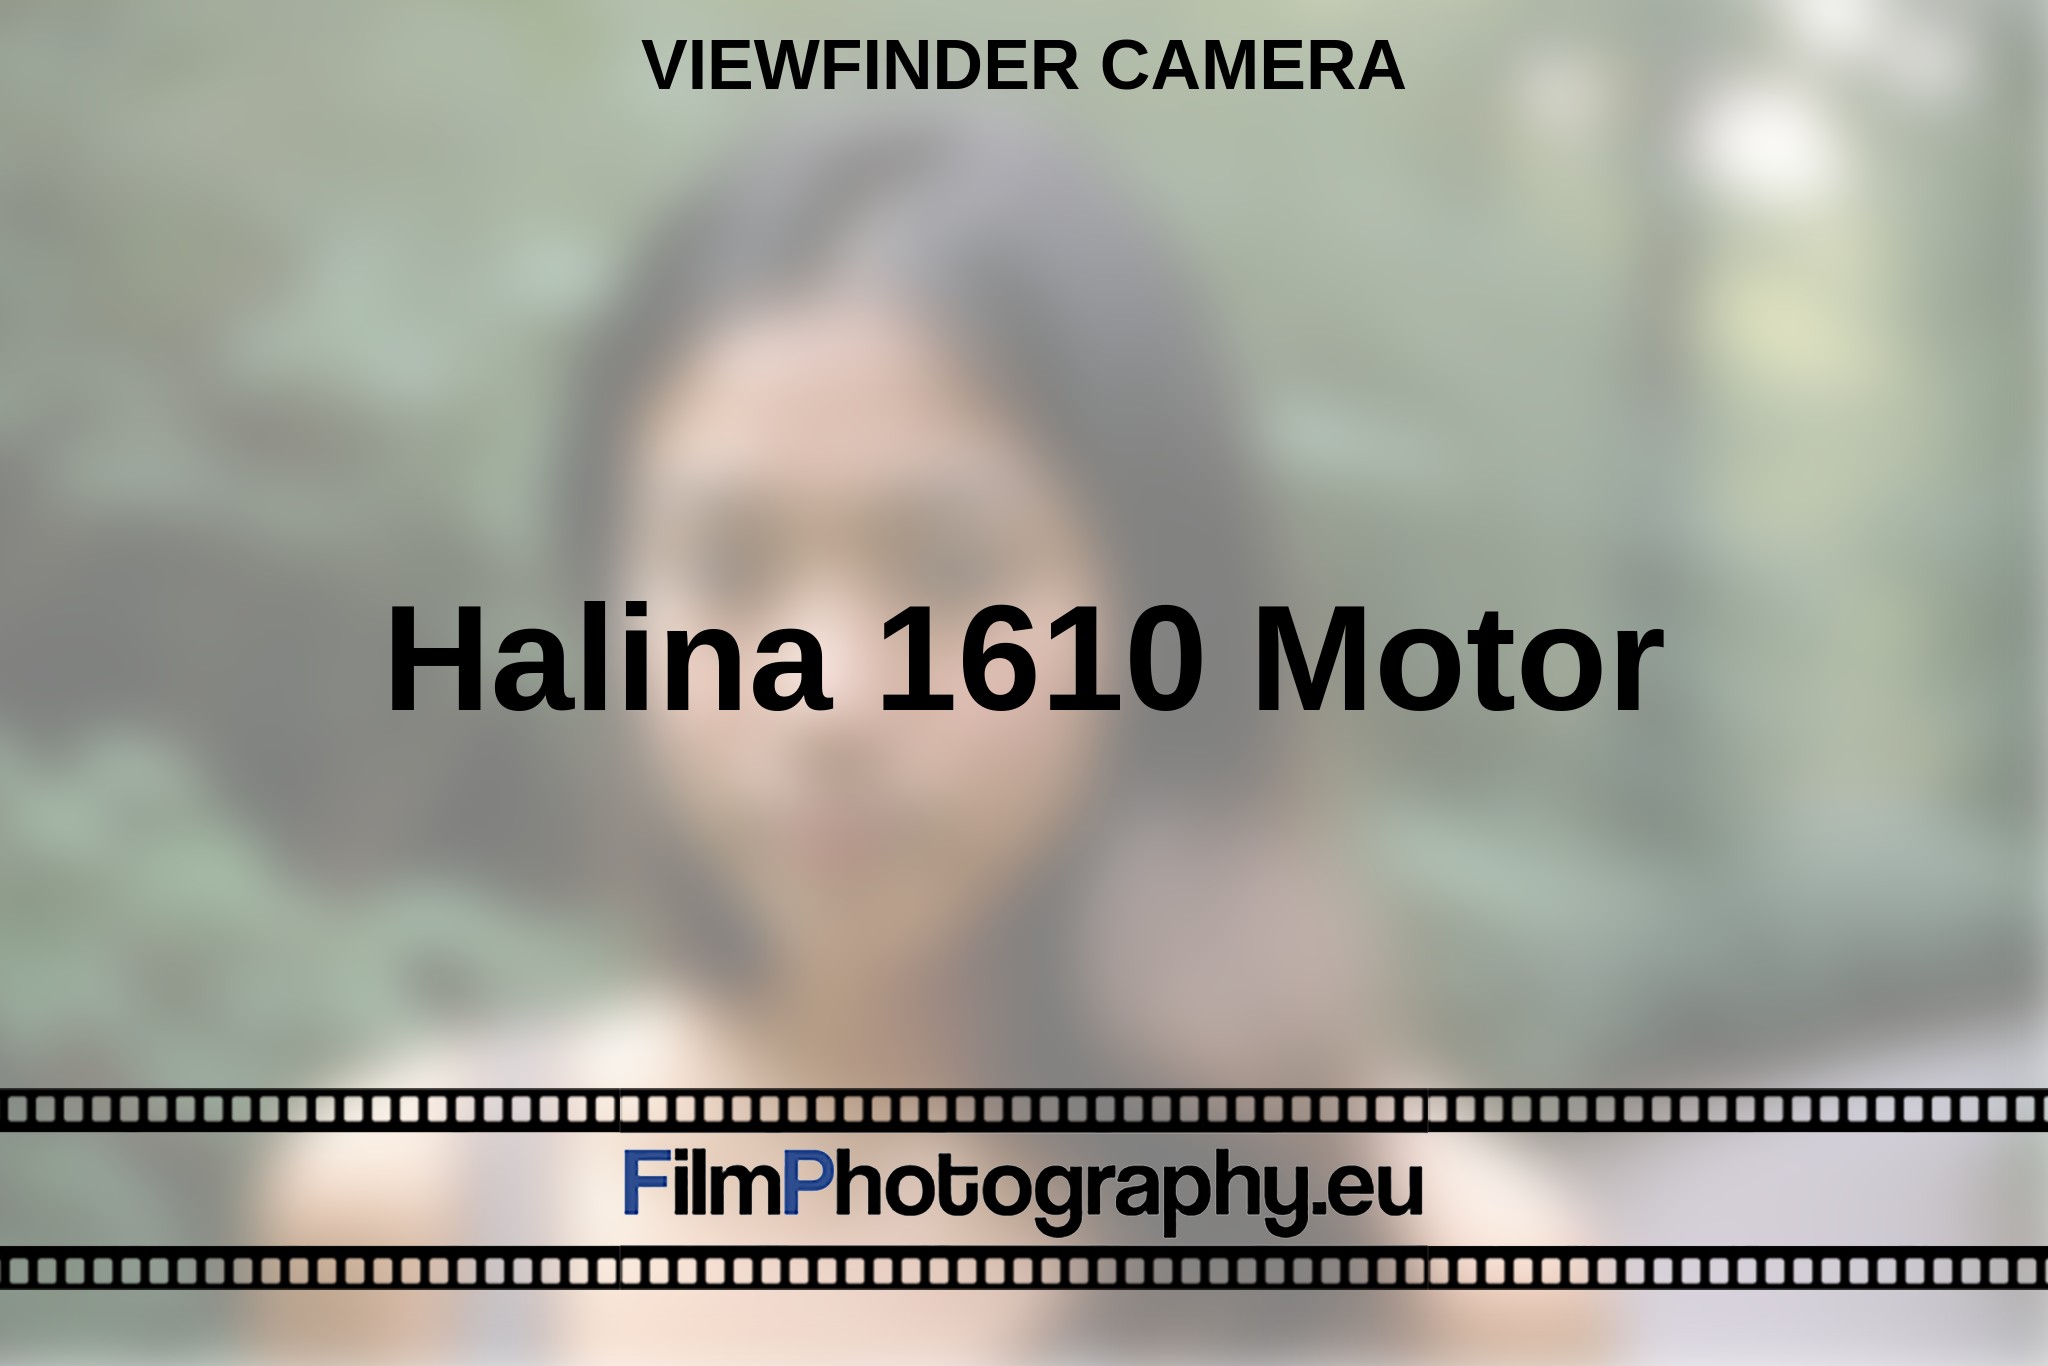 halina-1610-motor-viewfinder-camera-en-bnv.jpg